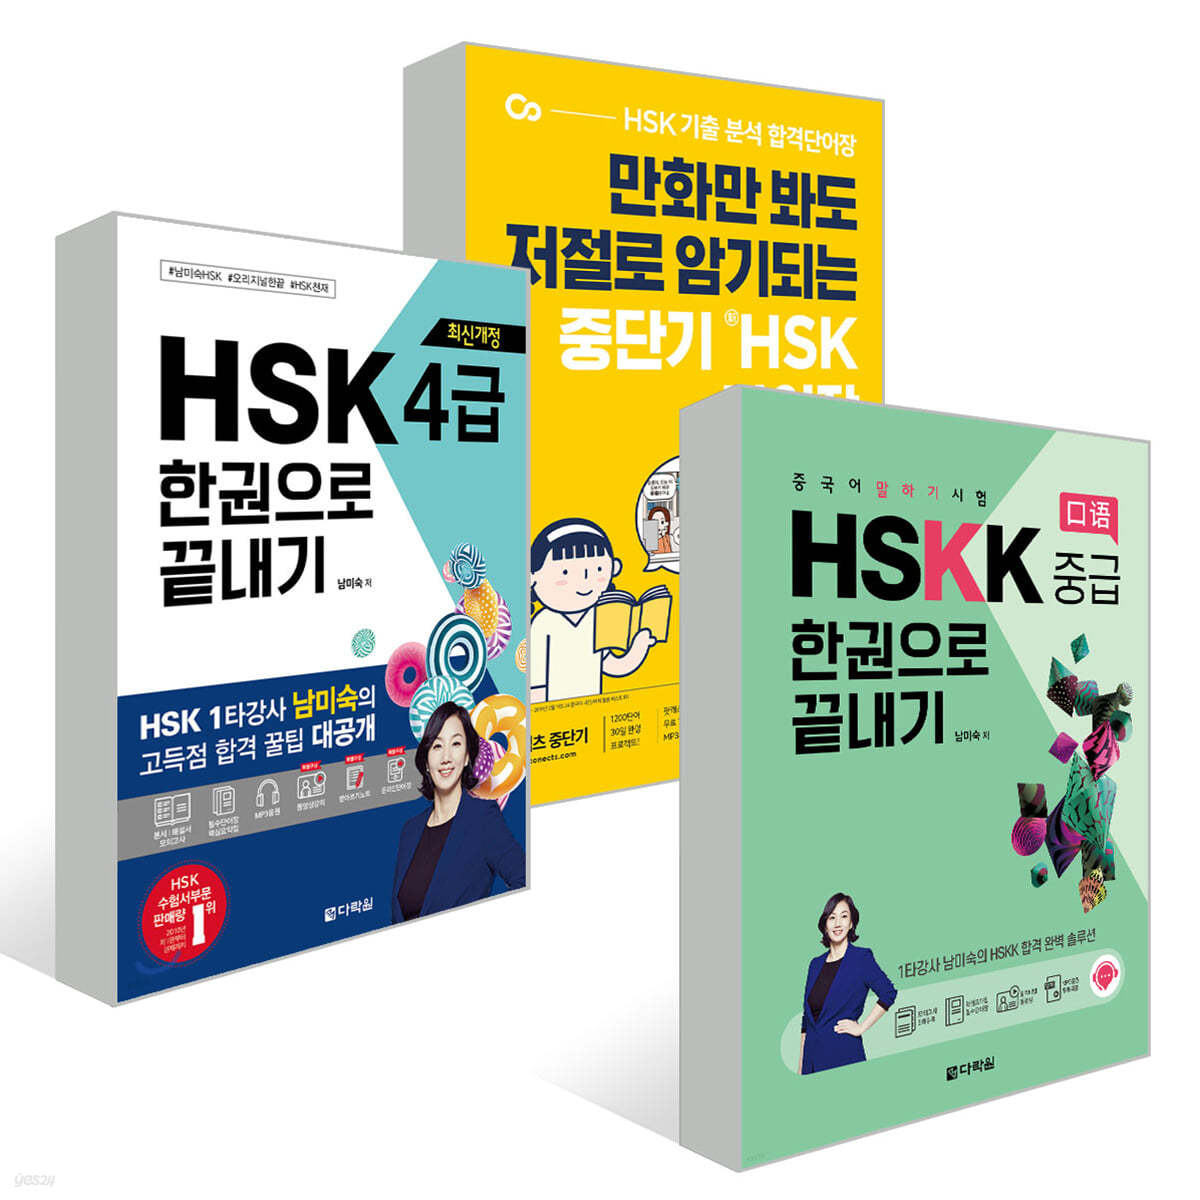 중단기 신 HSK 단어장 1-4급 + 최신개정 HSK 4급 한권으로 끝내기 + 중국어 말하기 시험 HSKK 중급 한권으로 끝내기